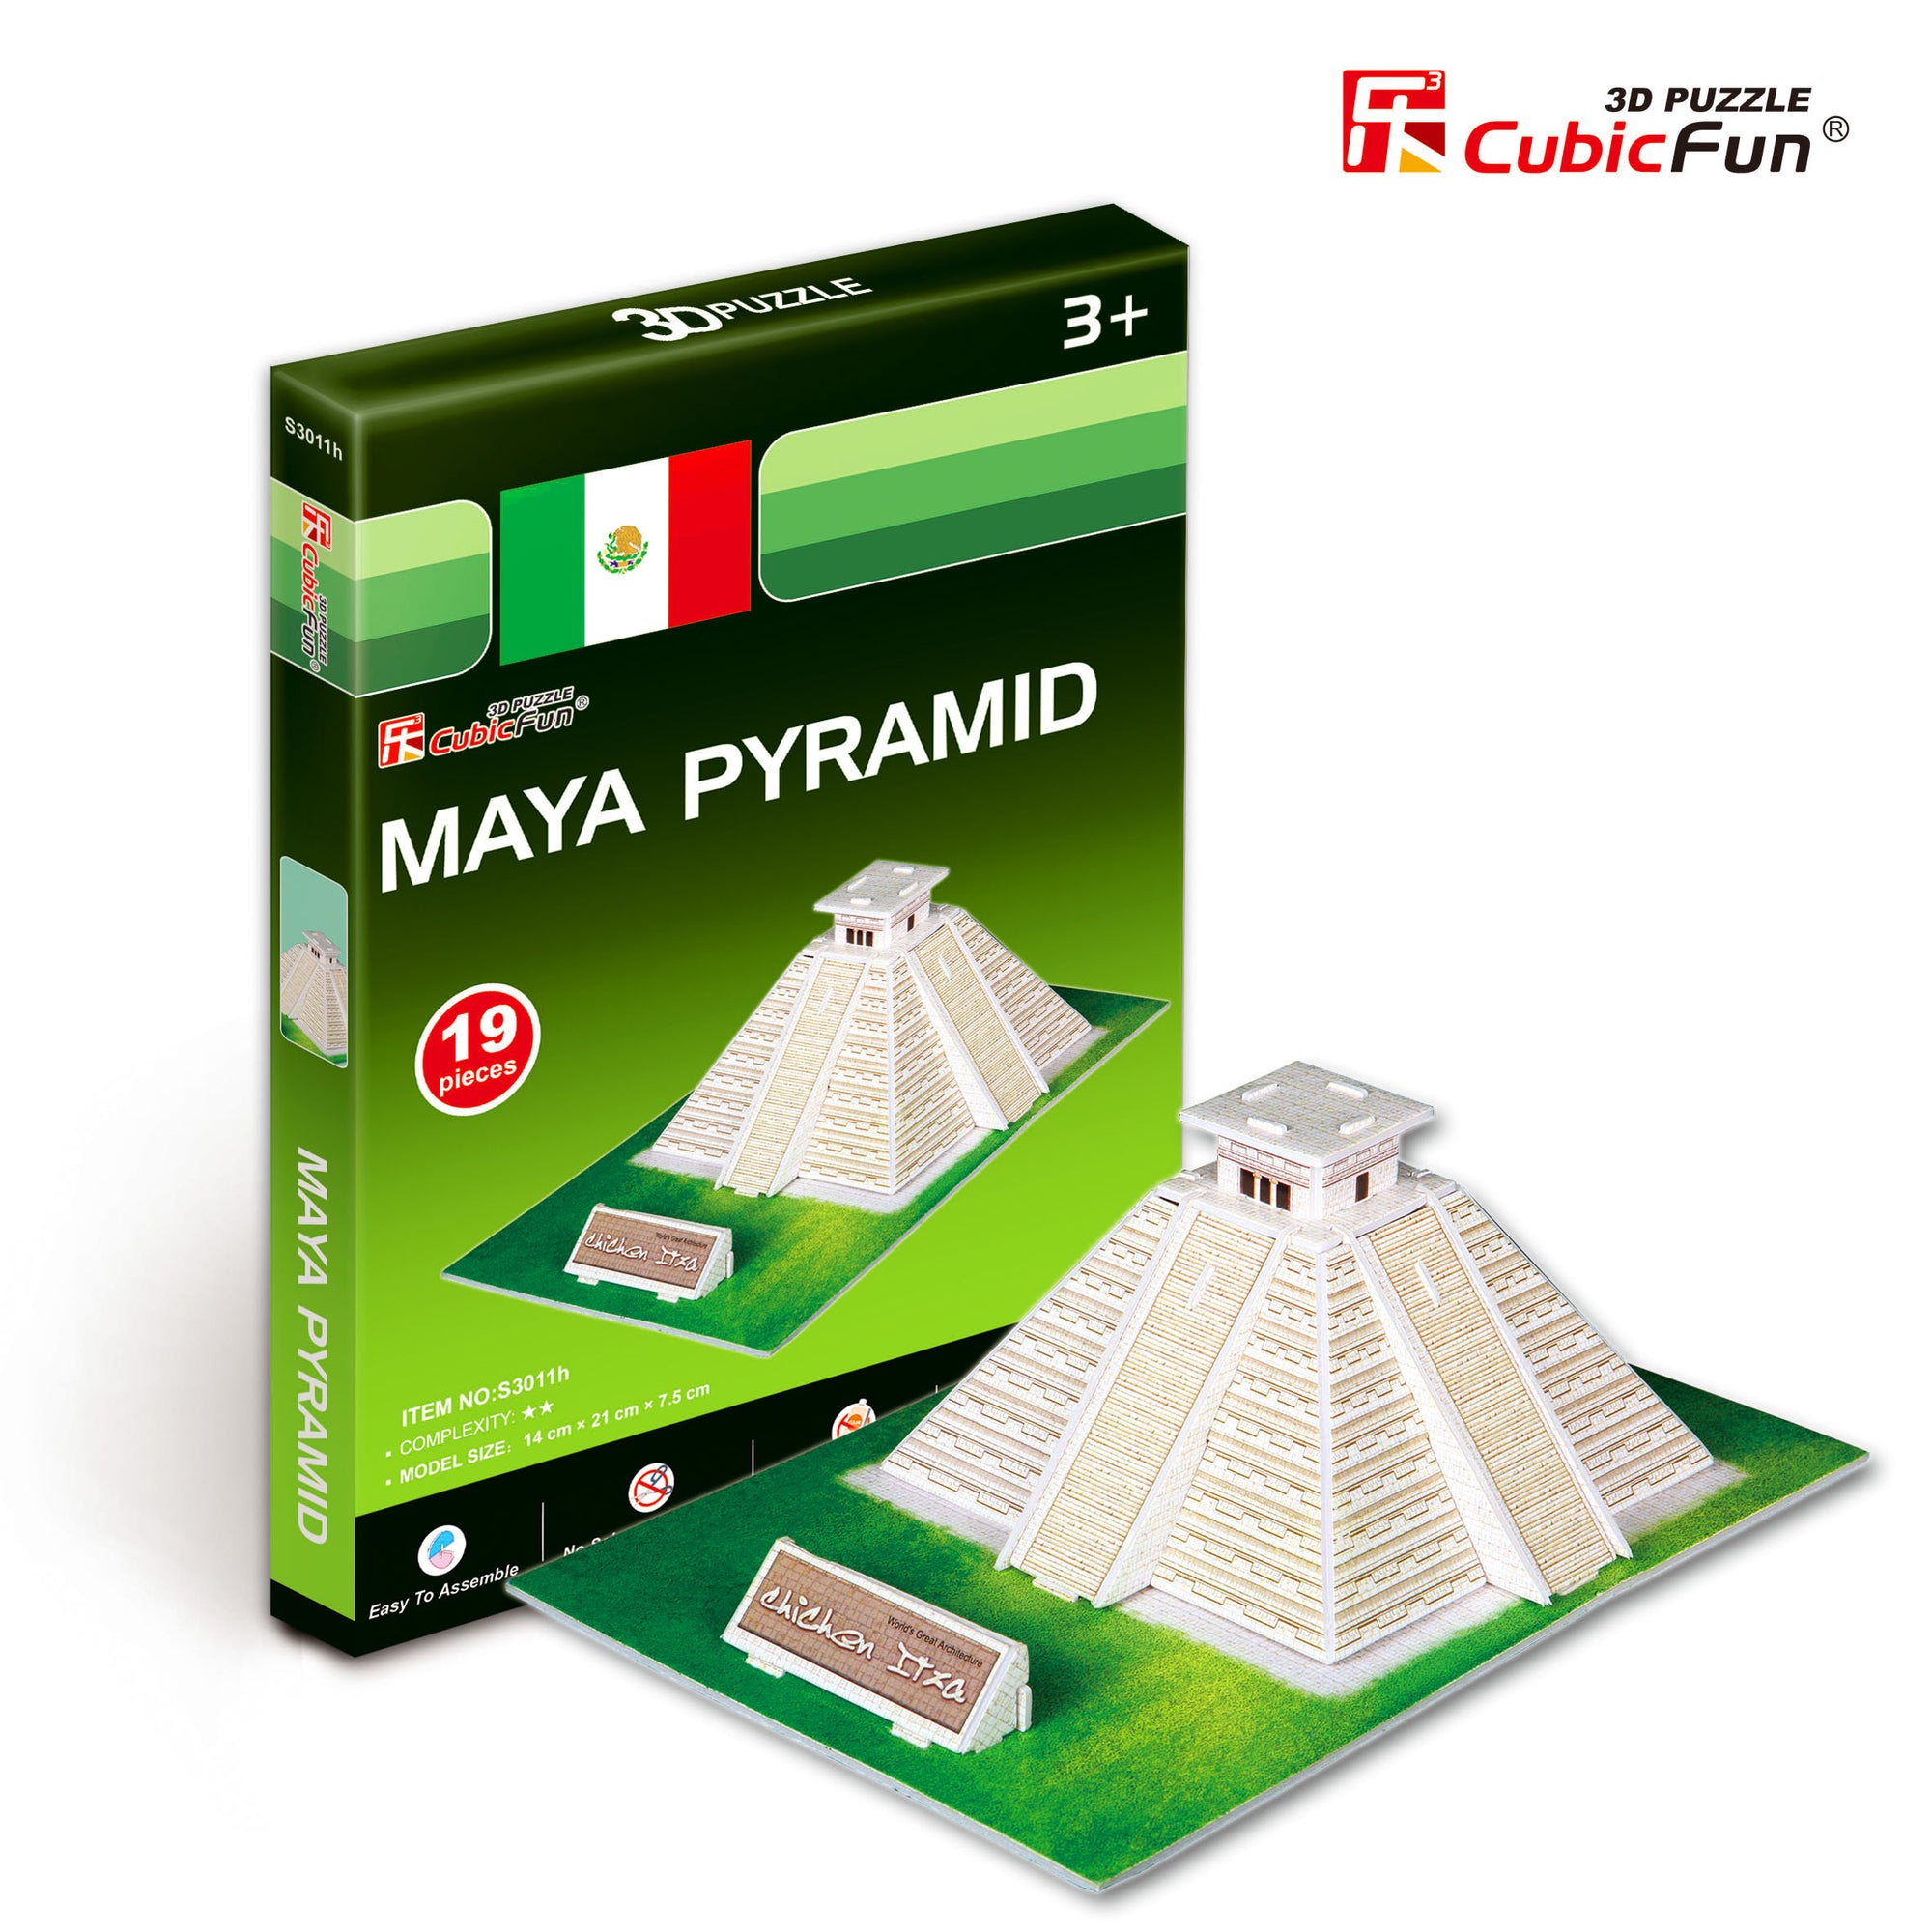 Maya Pyramid, 19pc 3D Puzzle